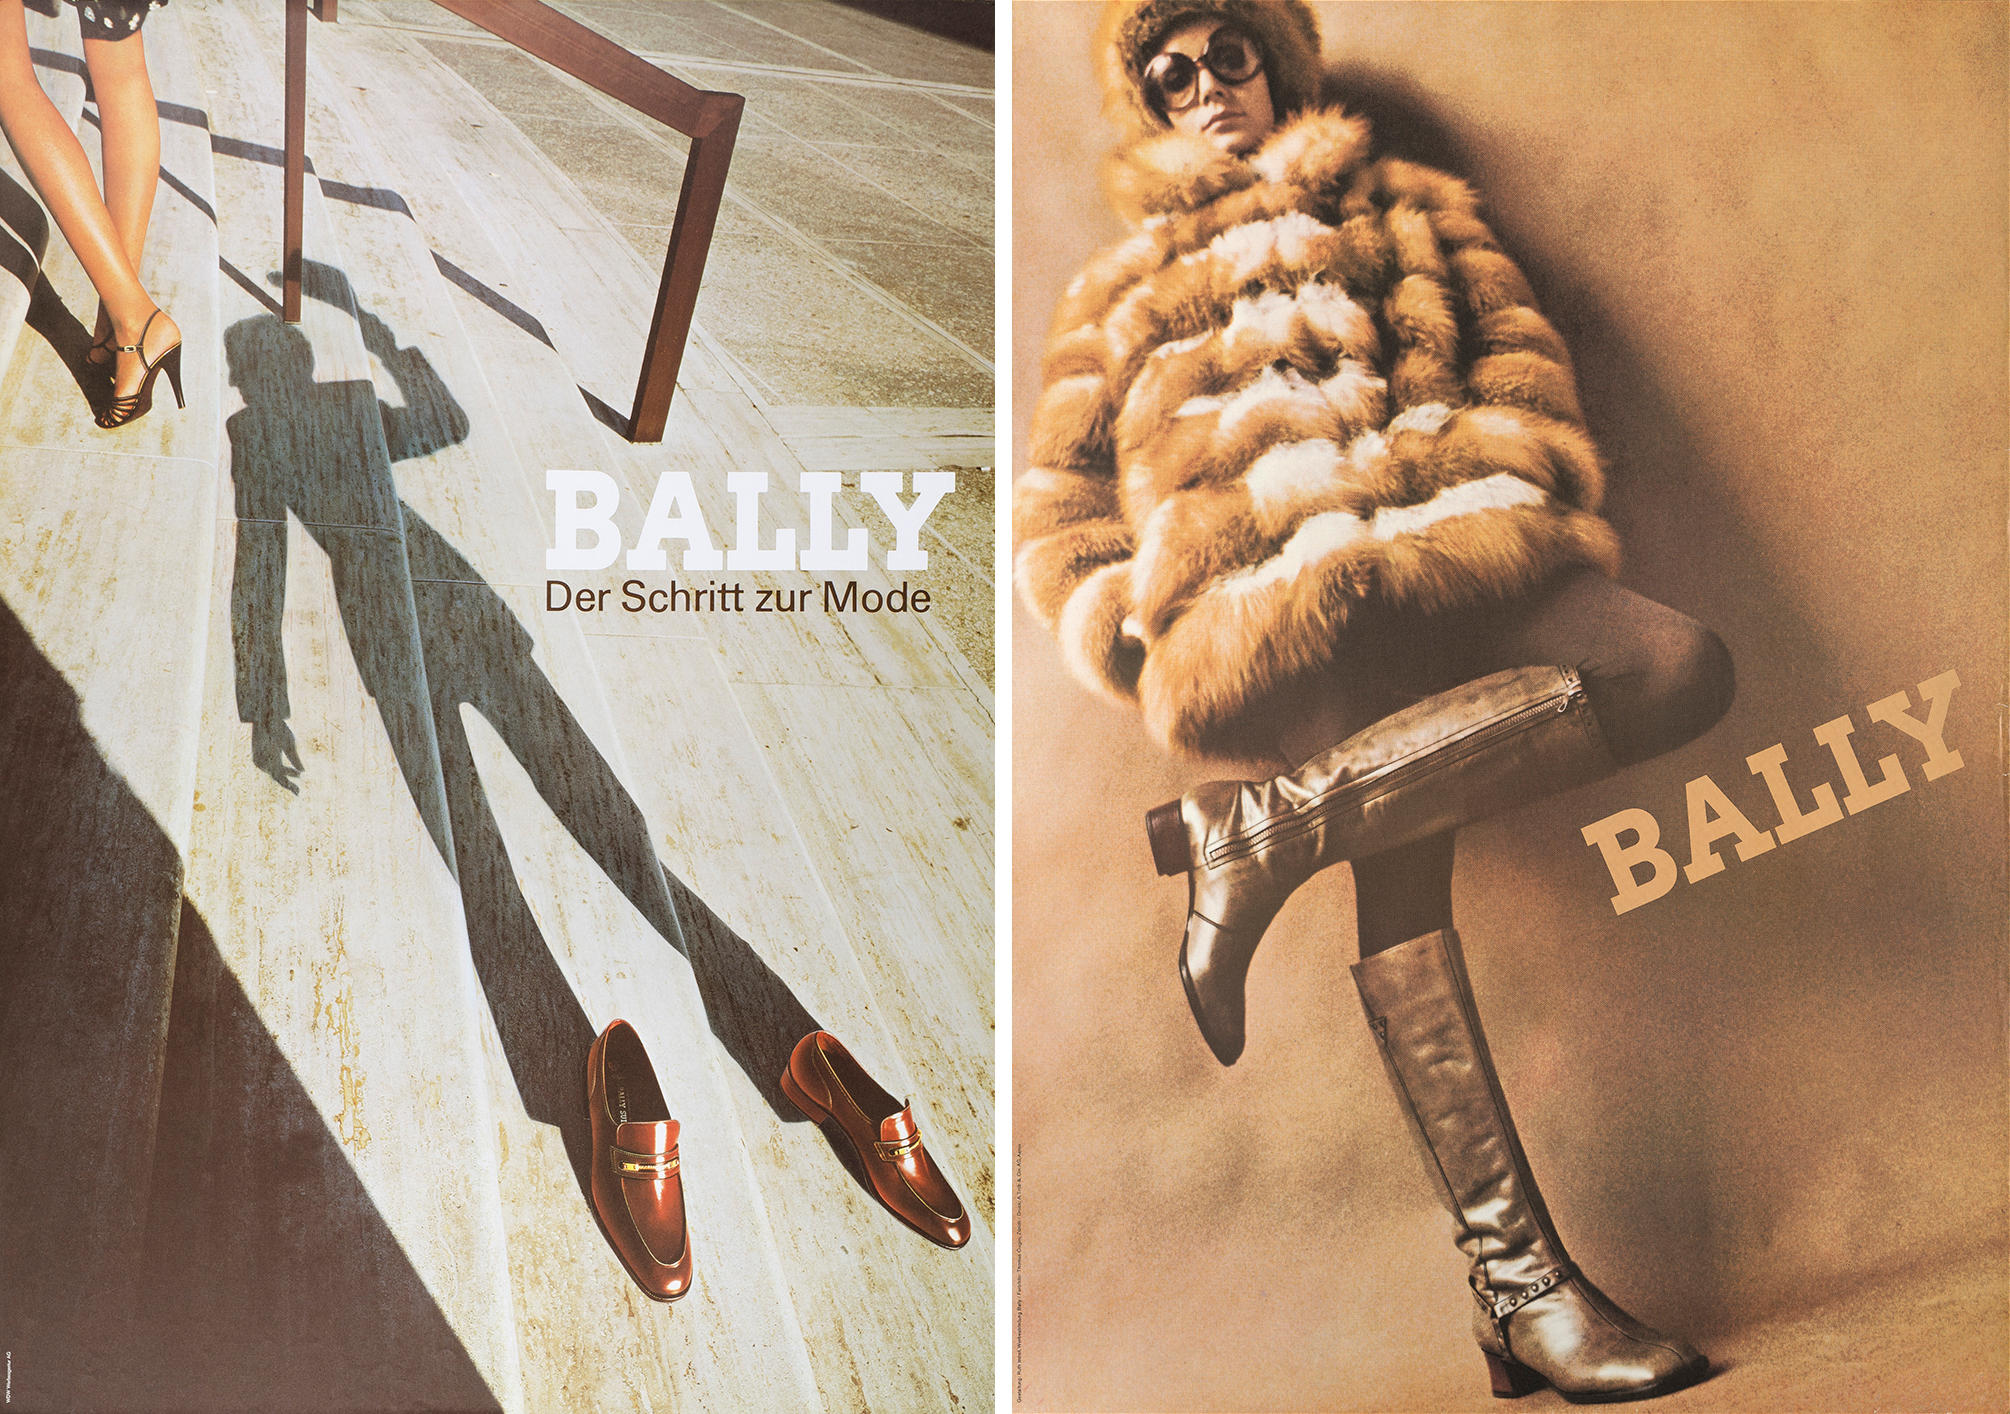 1978年(左)和1968年(右)巴利的海报广告示例